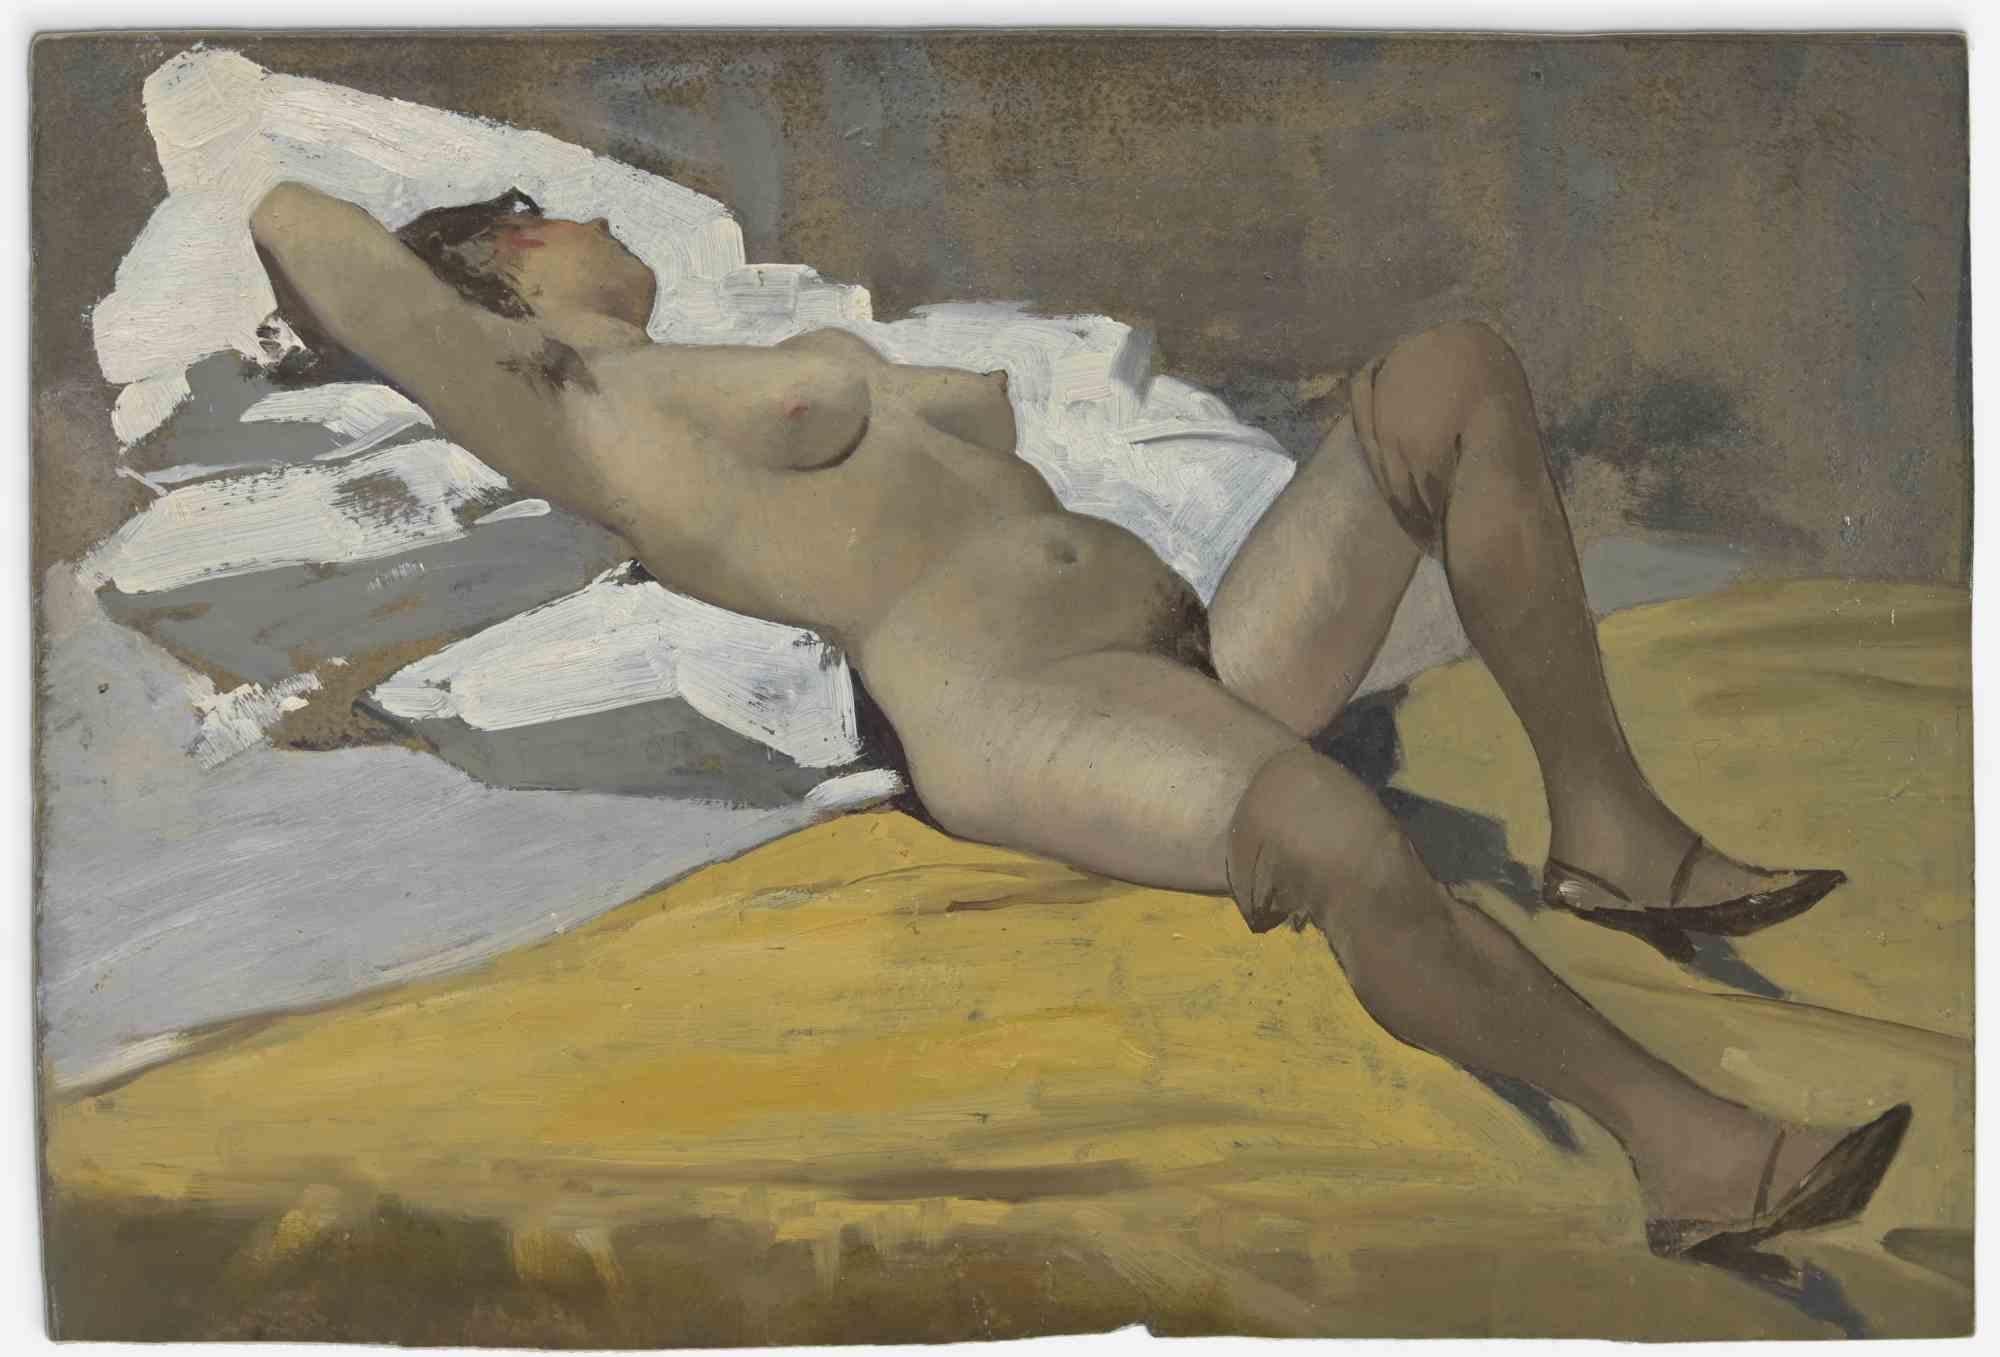 Femme couchée sur un tissu blanc - Peinture à l'huile du milieu du 20e siècle